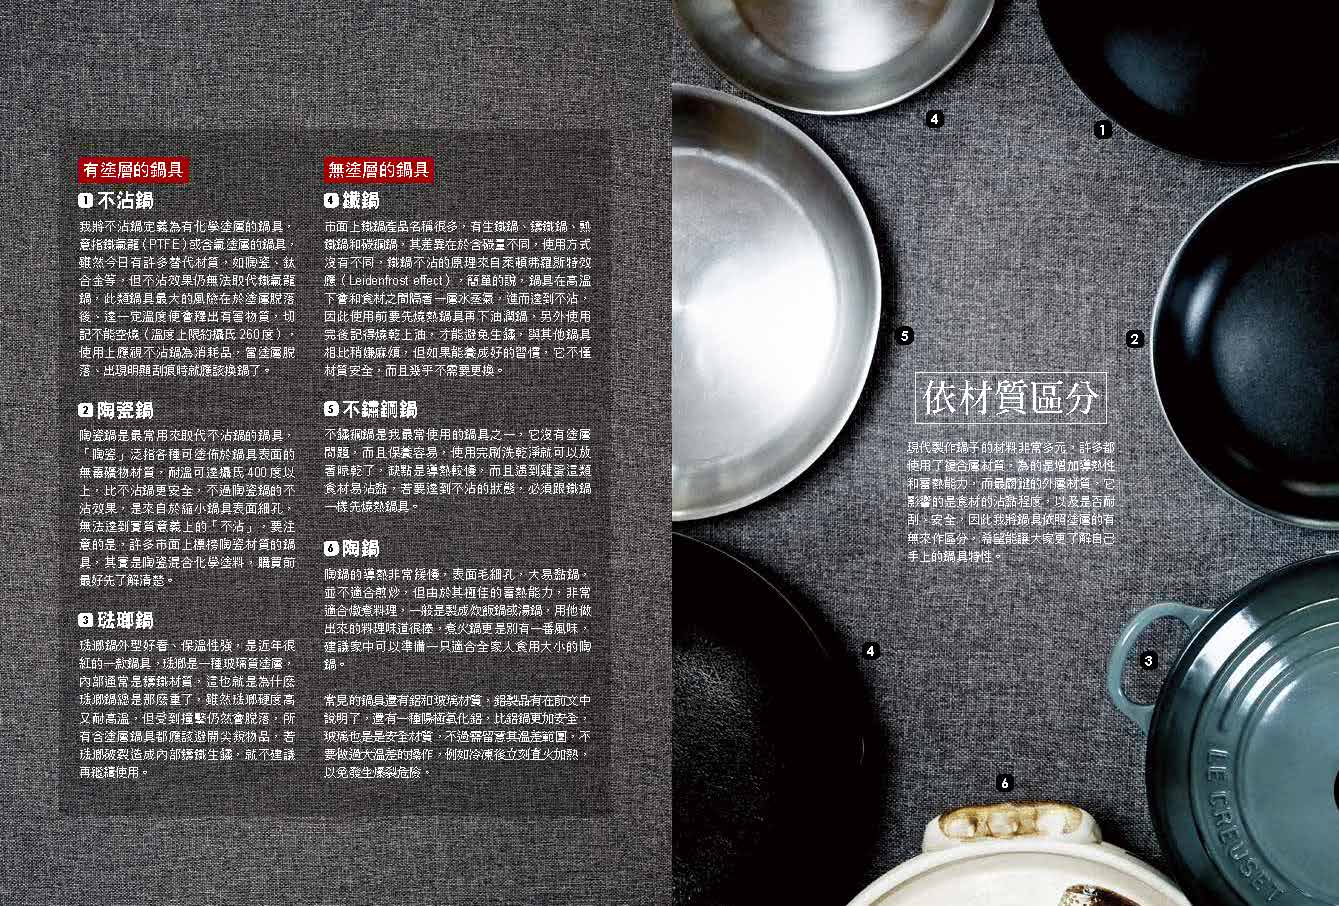 有鍋就能煮：「噗醬老師」搶鏡頭監製 煎鍋、湯鍋、氣炸鍋…八鍋大絕招 100%保證完食